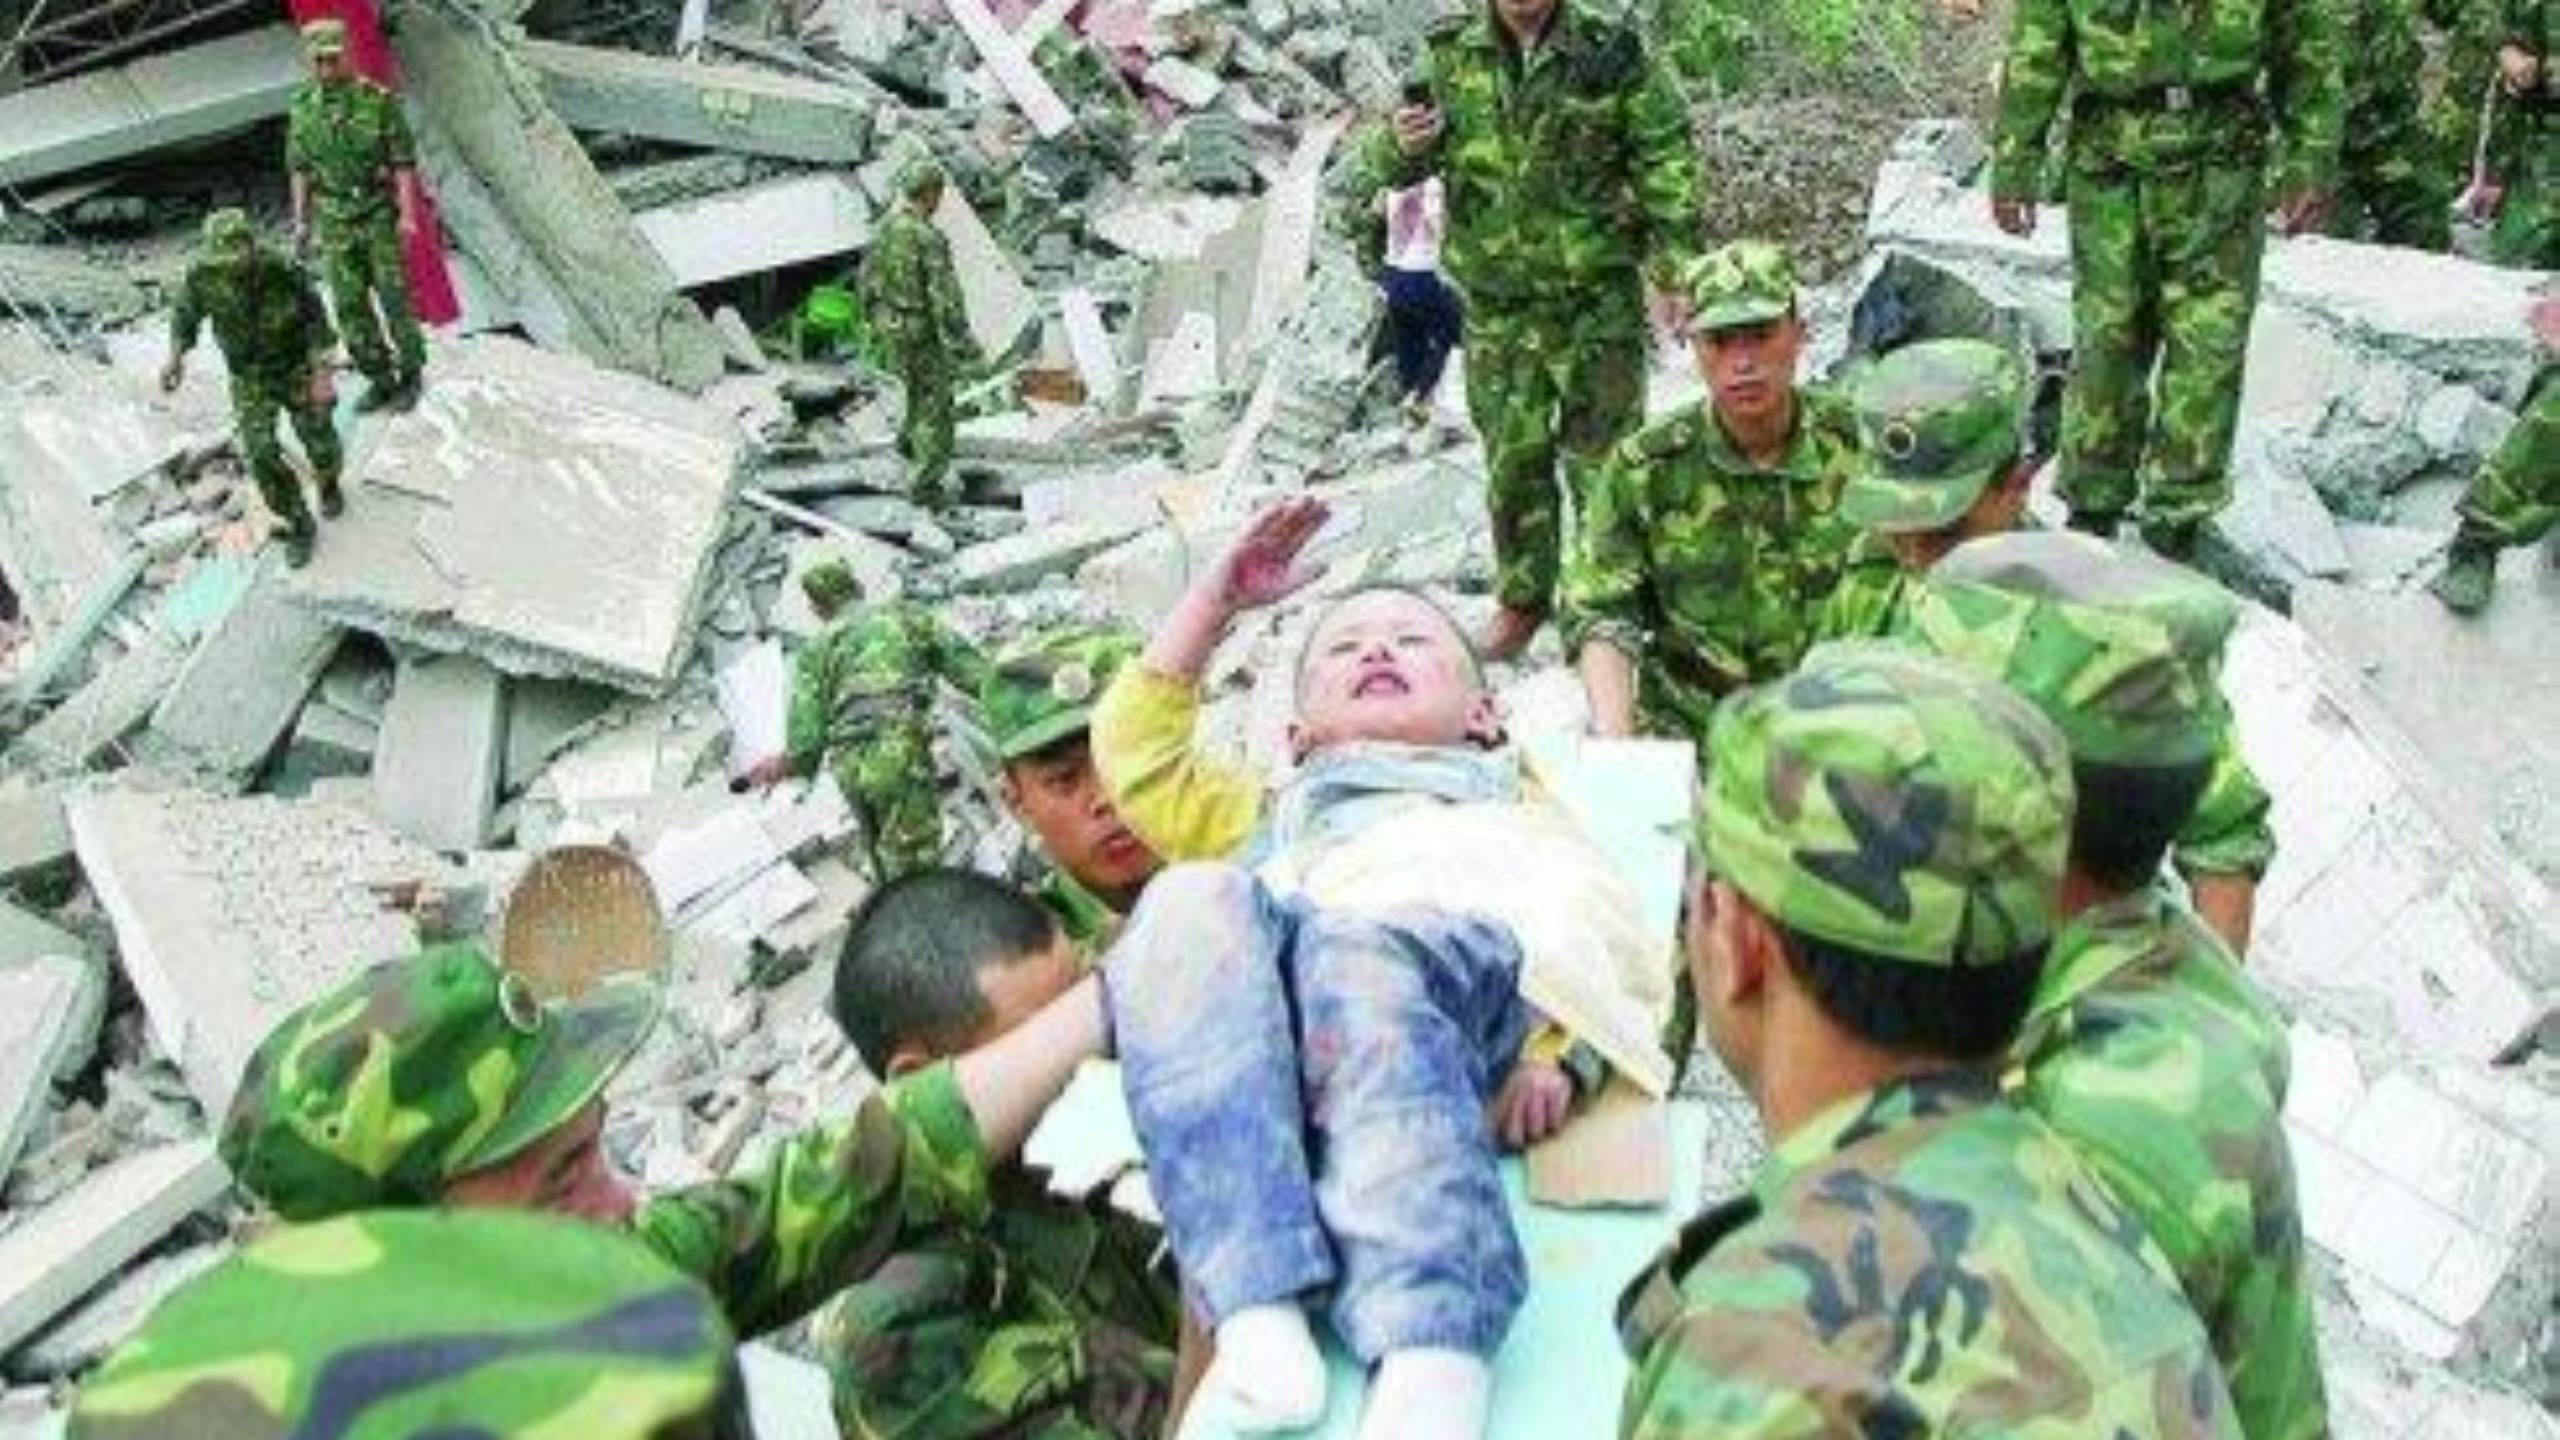 十三年前的汶川大地震,涌现出了一大批英雄少年,一起看看都有谁